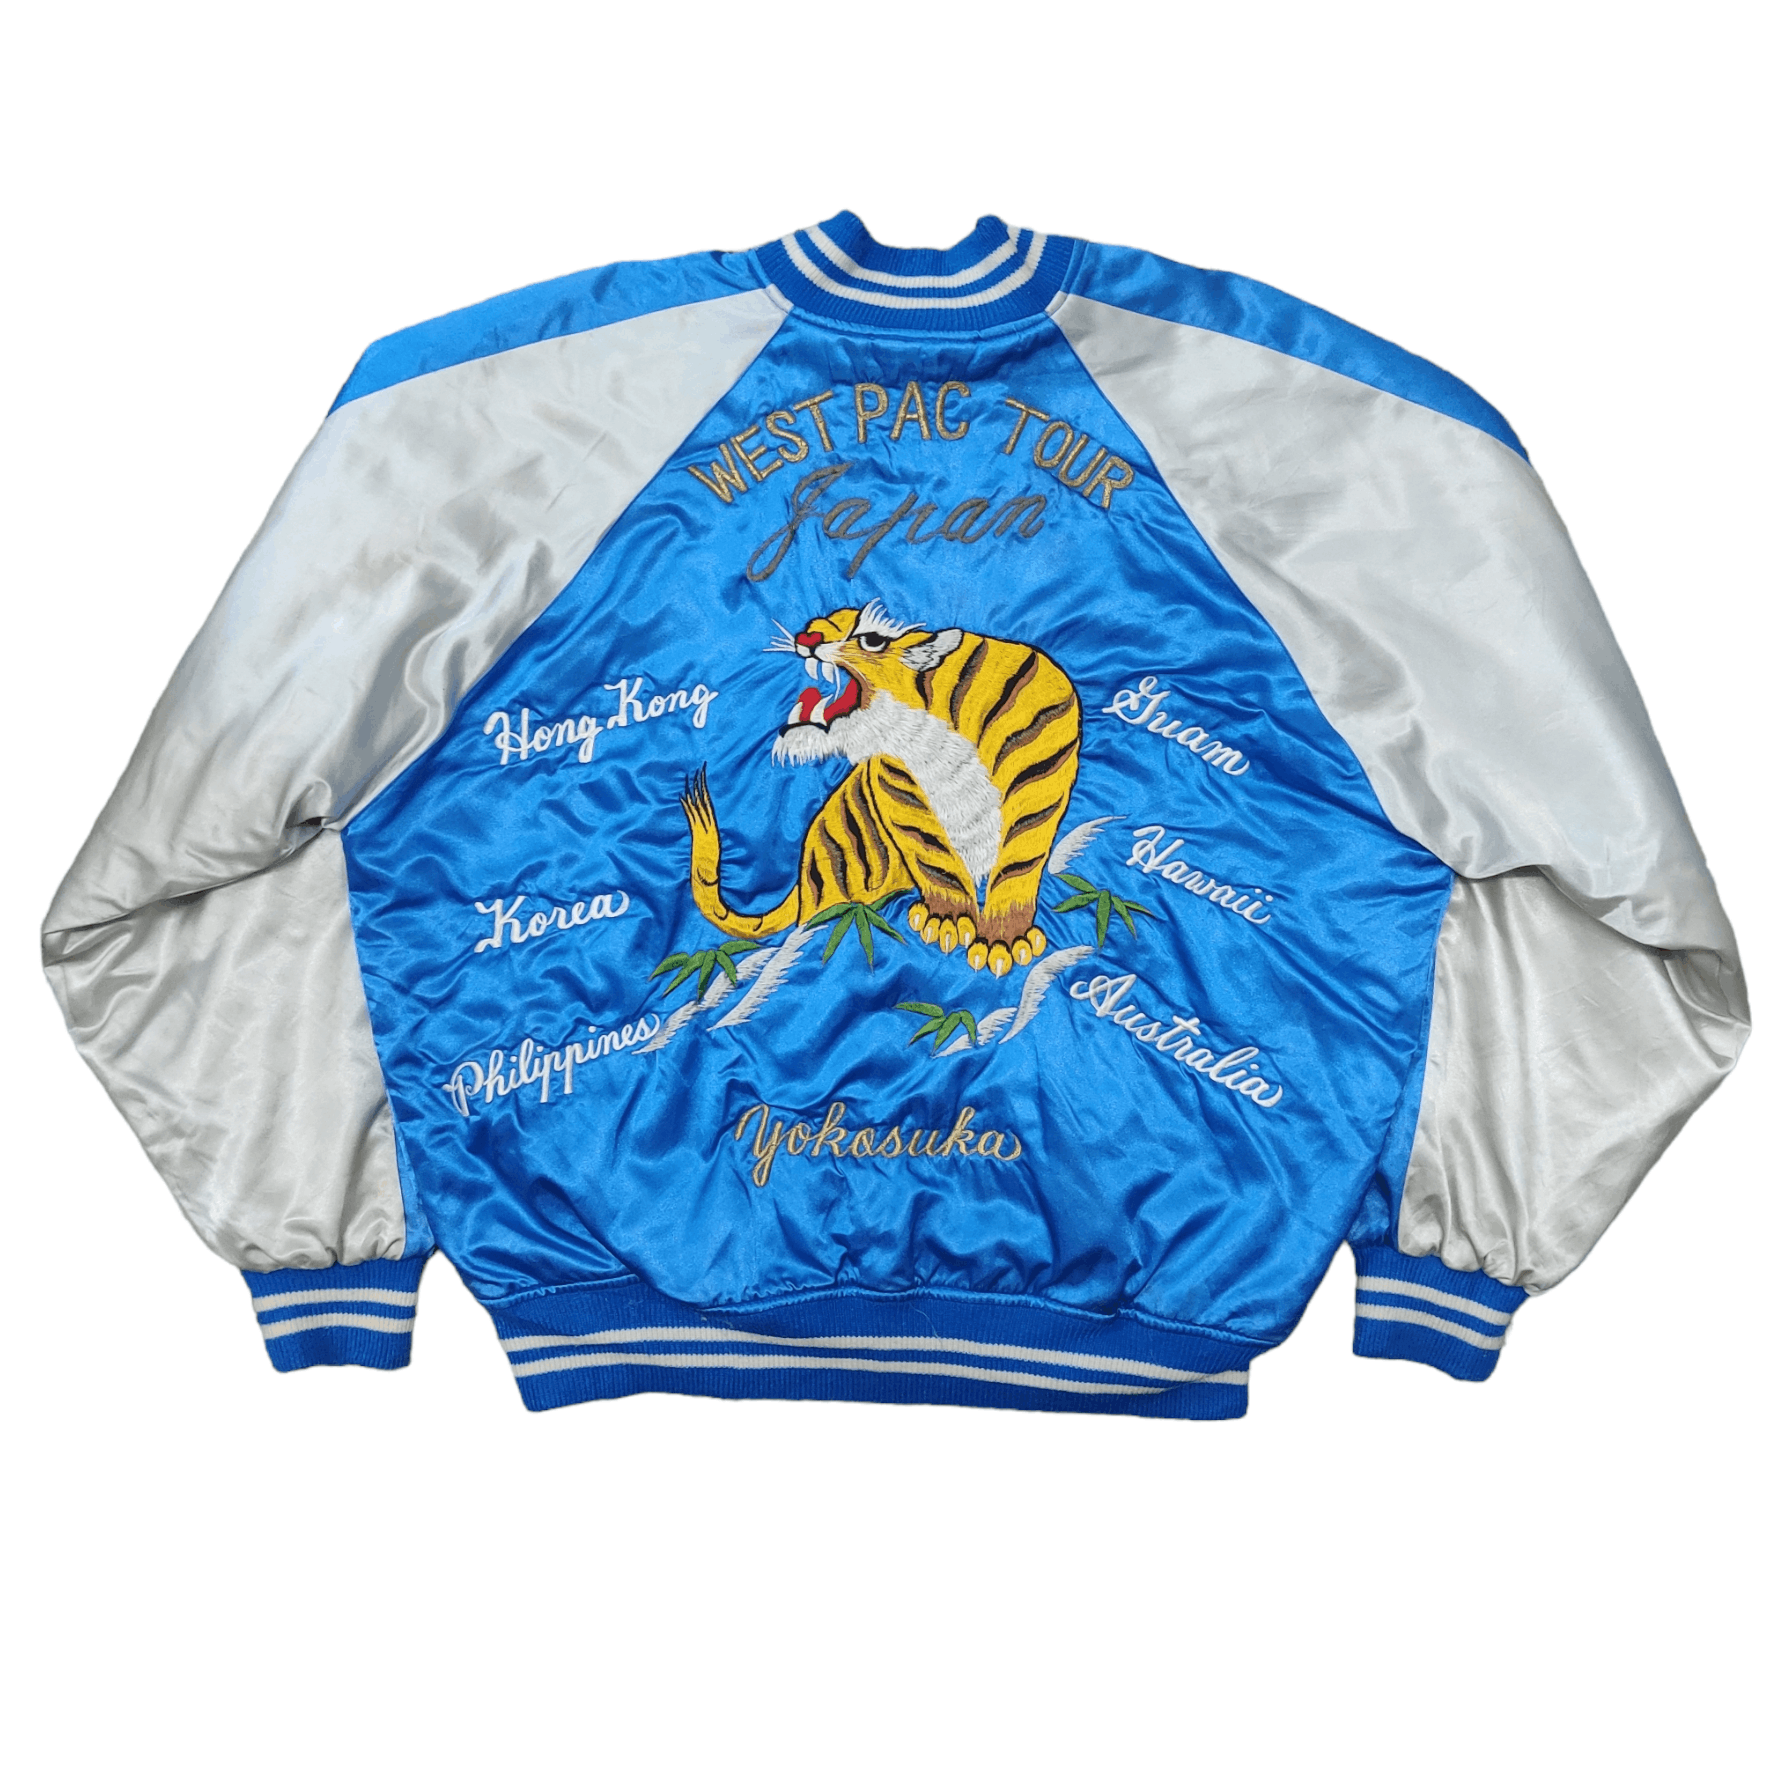 Vintage - Vtg Sukajan Souvenir Jacket West Pac Tour Japan Tiger - 1